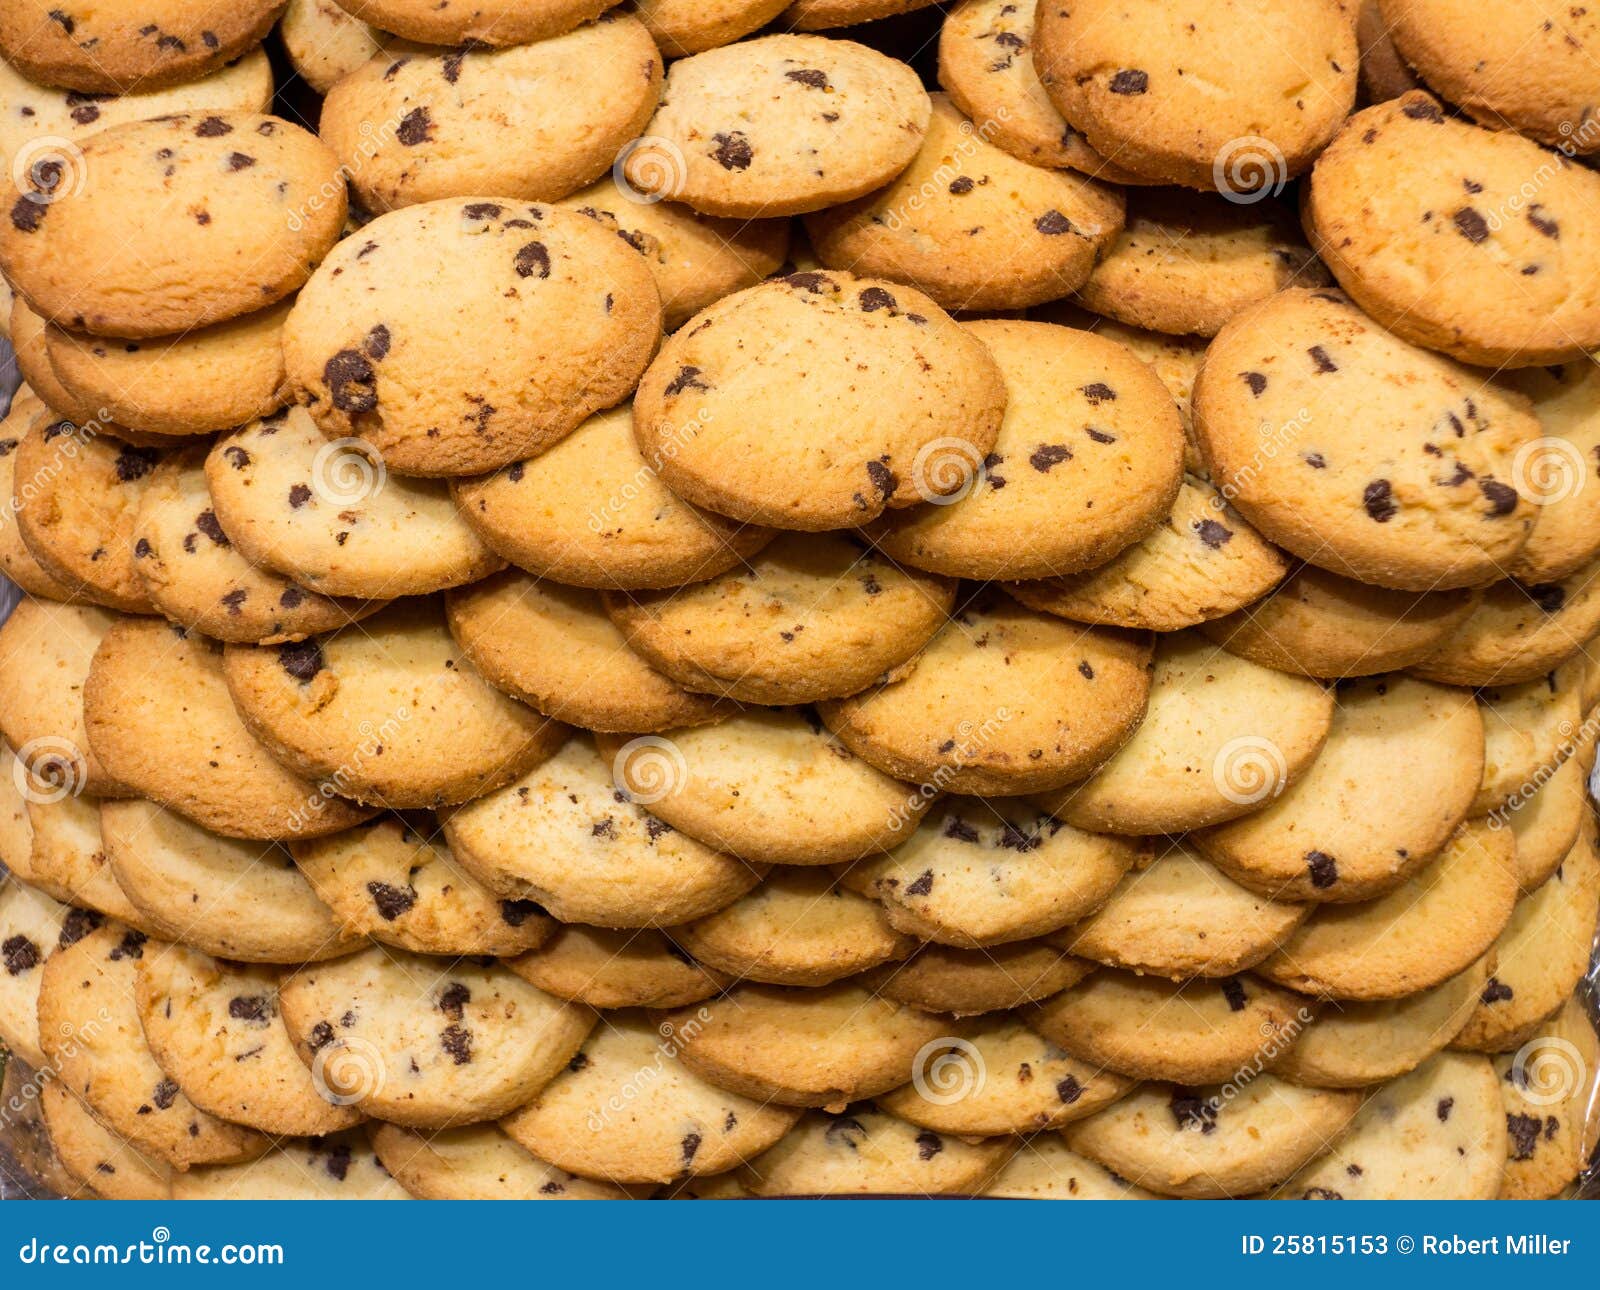 piles-cookies-25815153.jpg